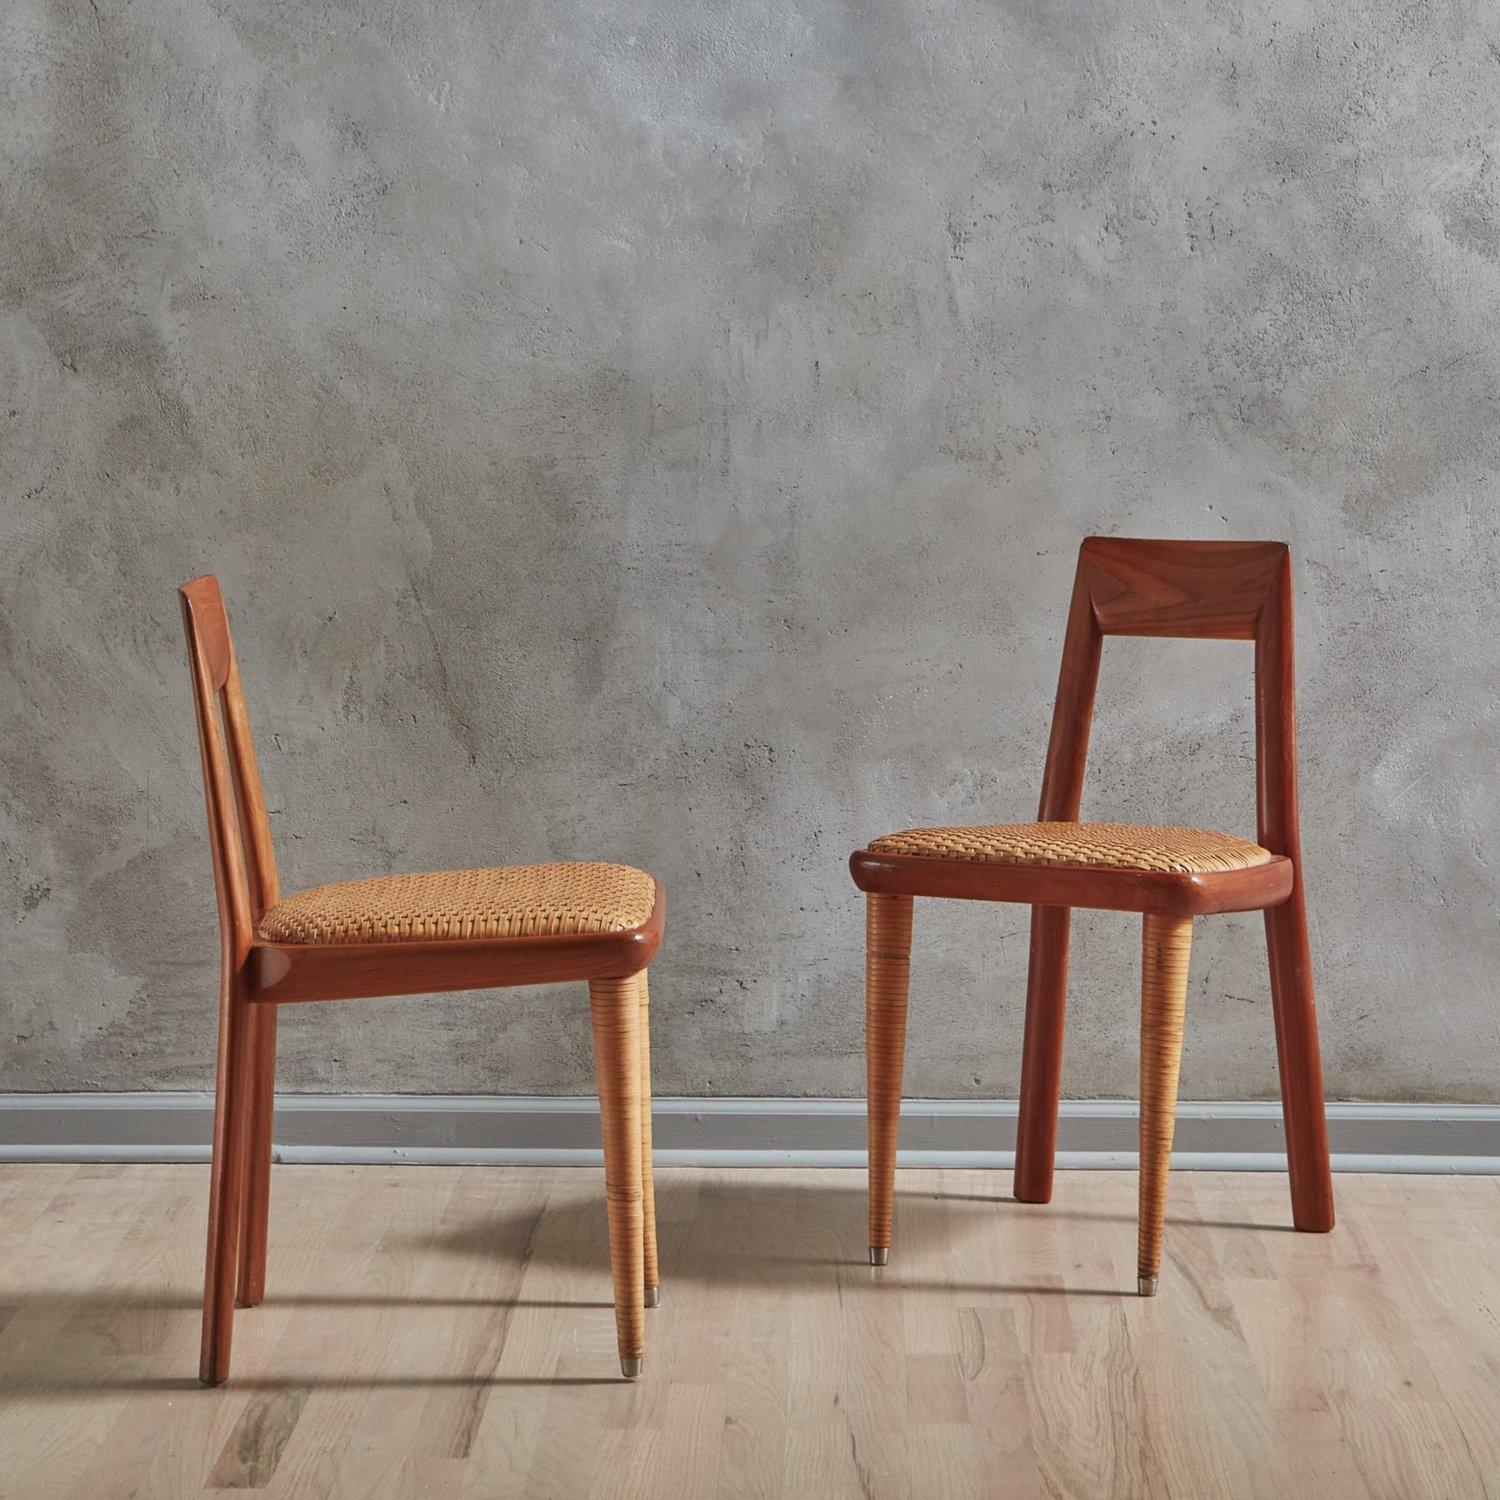 Ensemble de 8 chaises de salle à manger italiennes du milieu du siècle par Pierantonio Bonacina. Ces chaises sont dotées d'un cadre en bois anguleux, d'un beau veinage et d'un dossier ouvert. Ils sont dotés de sièges en cuir tressé et de pieds avant